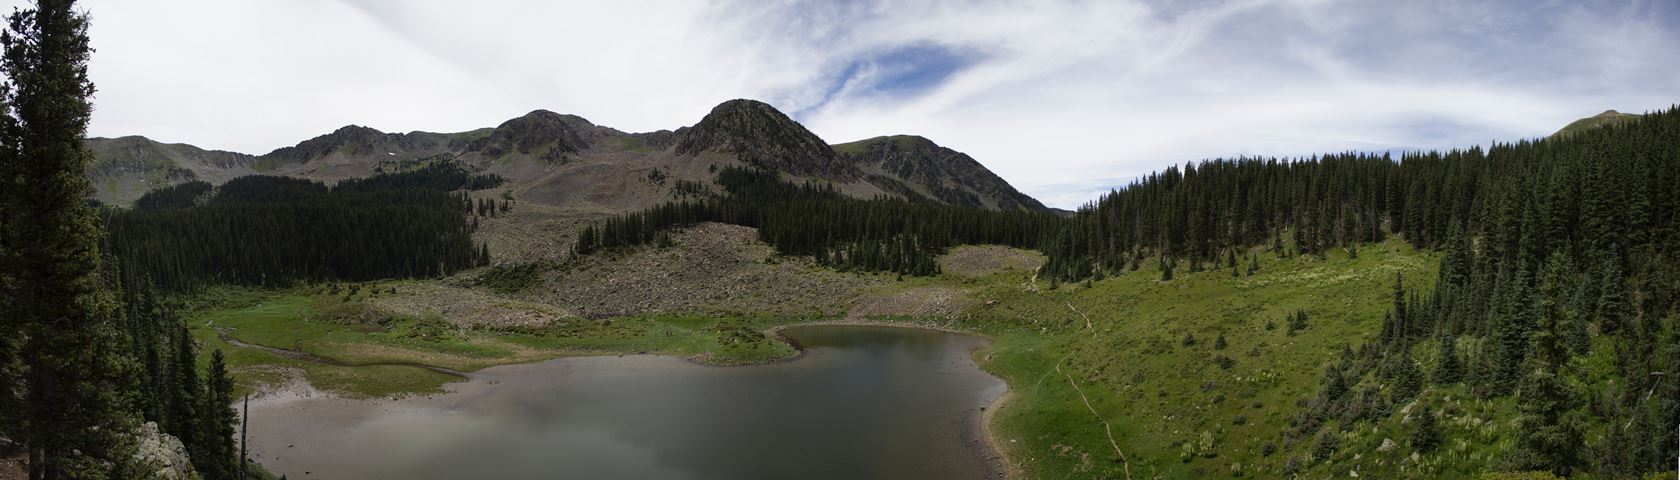 William's Lake Panorama